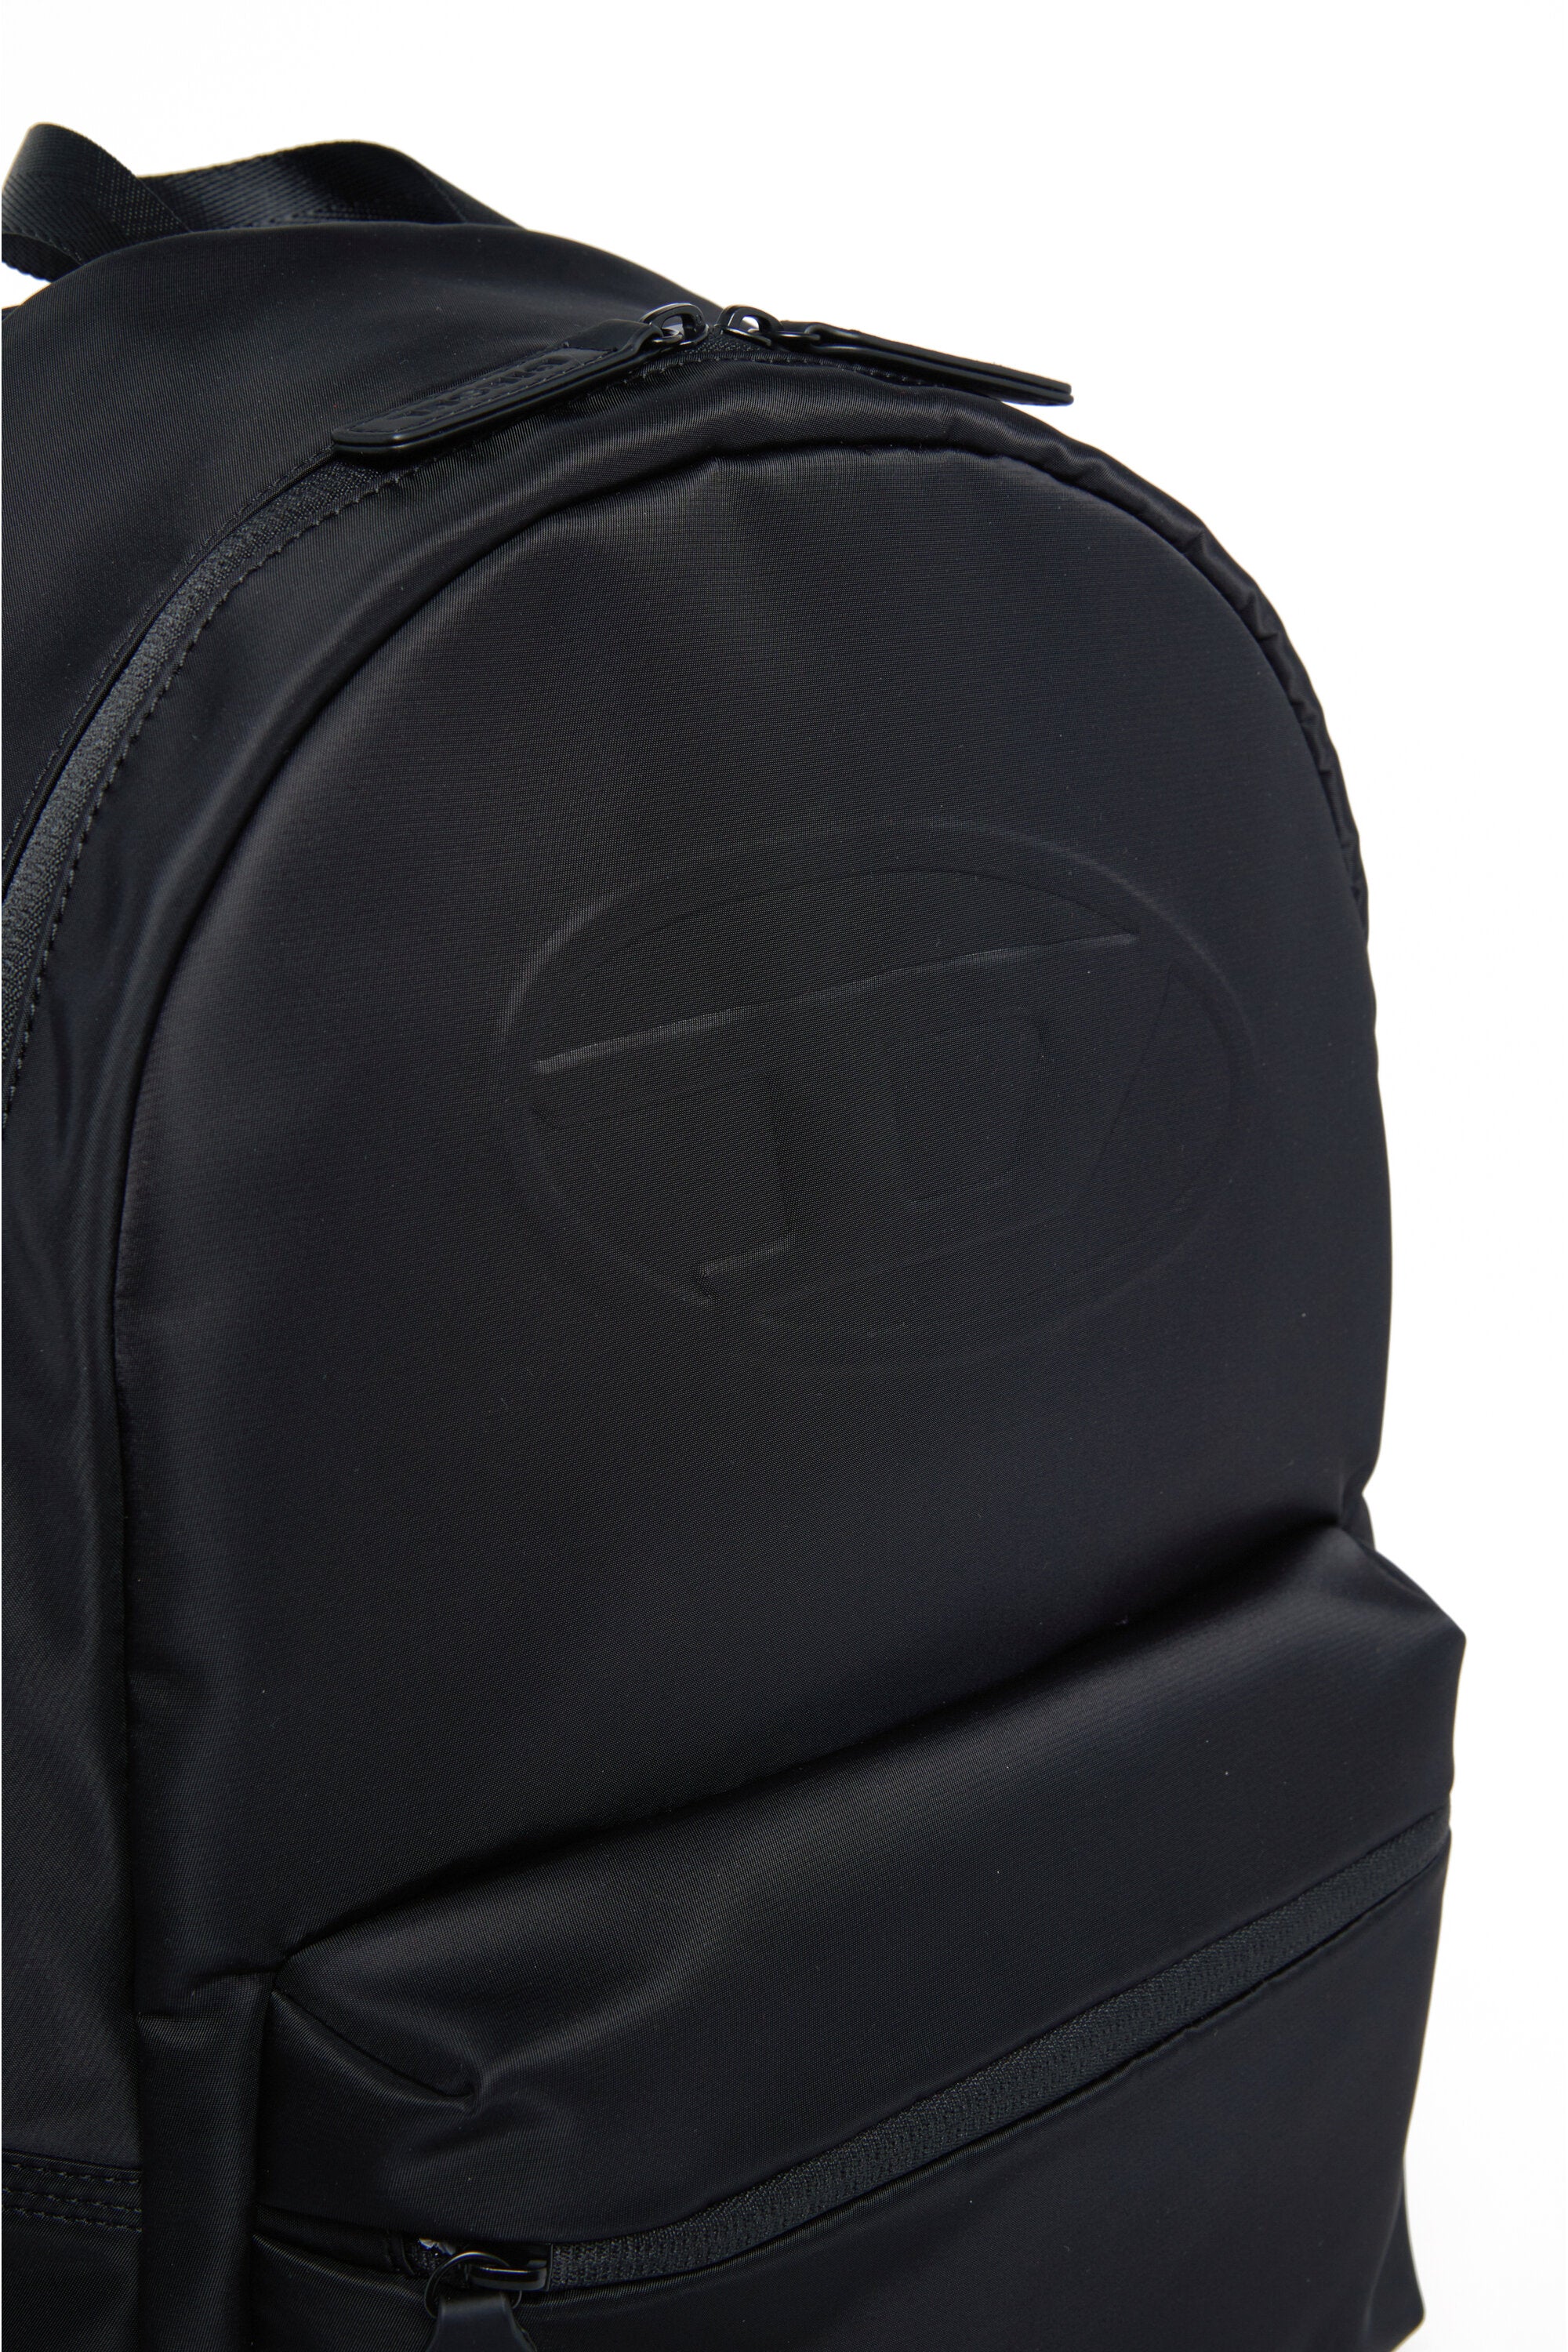 Oval D branded backpack